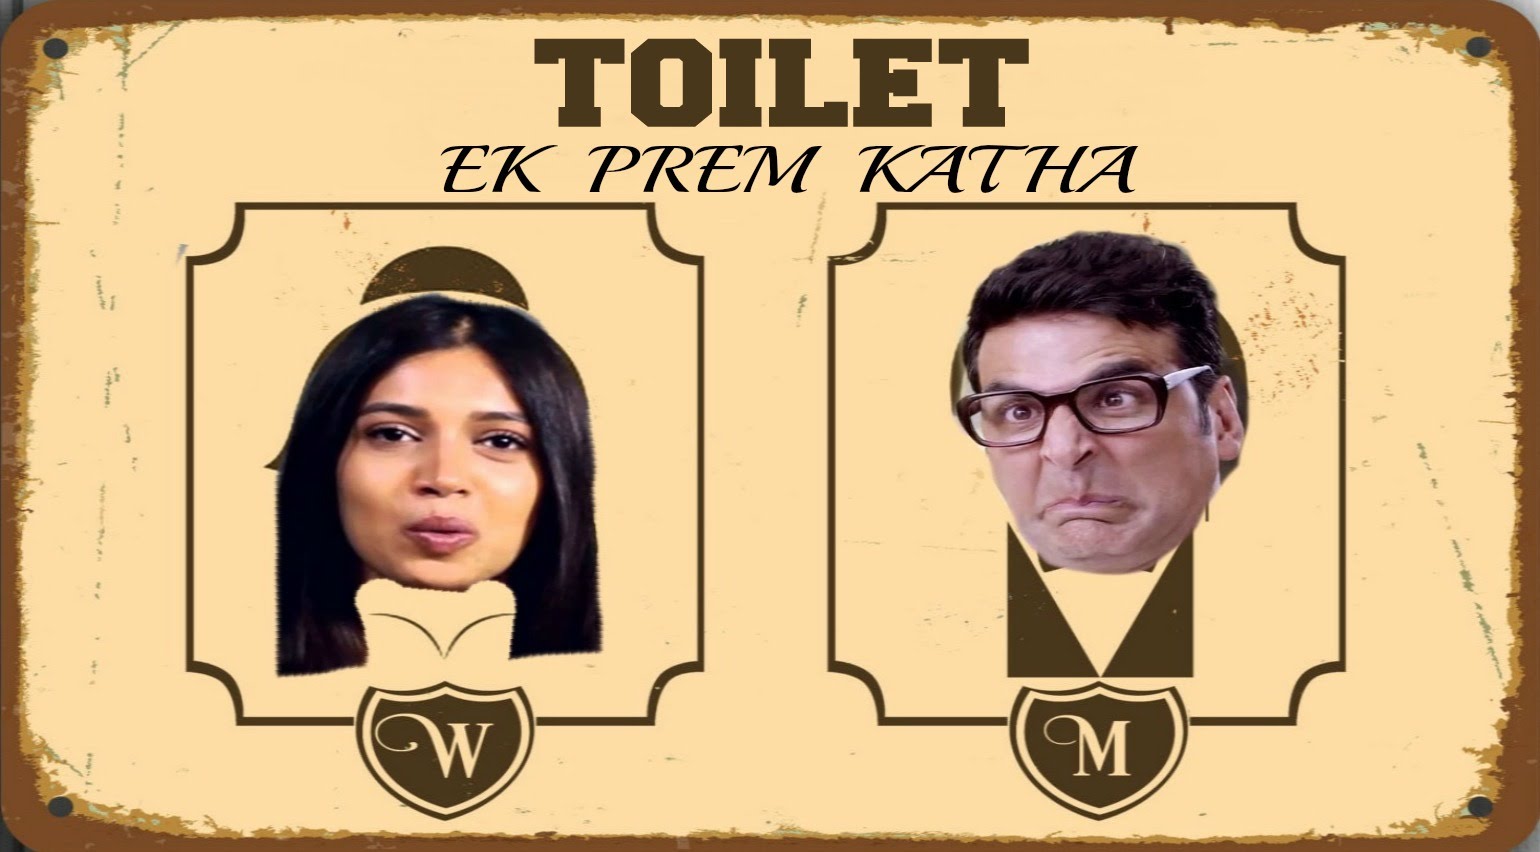 Toilet – Ek Prem Katha: Akshay Kumar unveils dialogue promos – WATCH